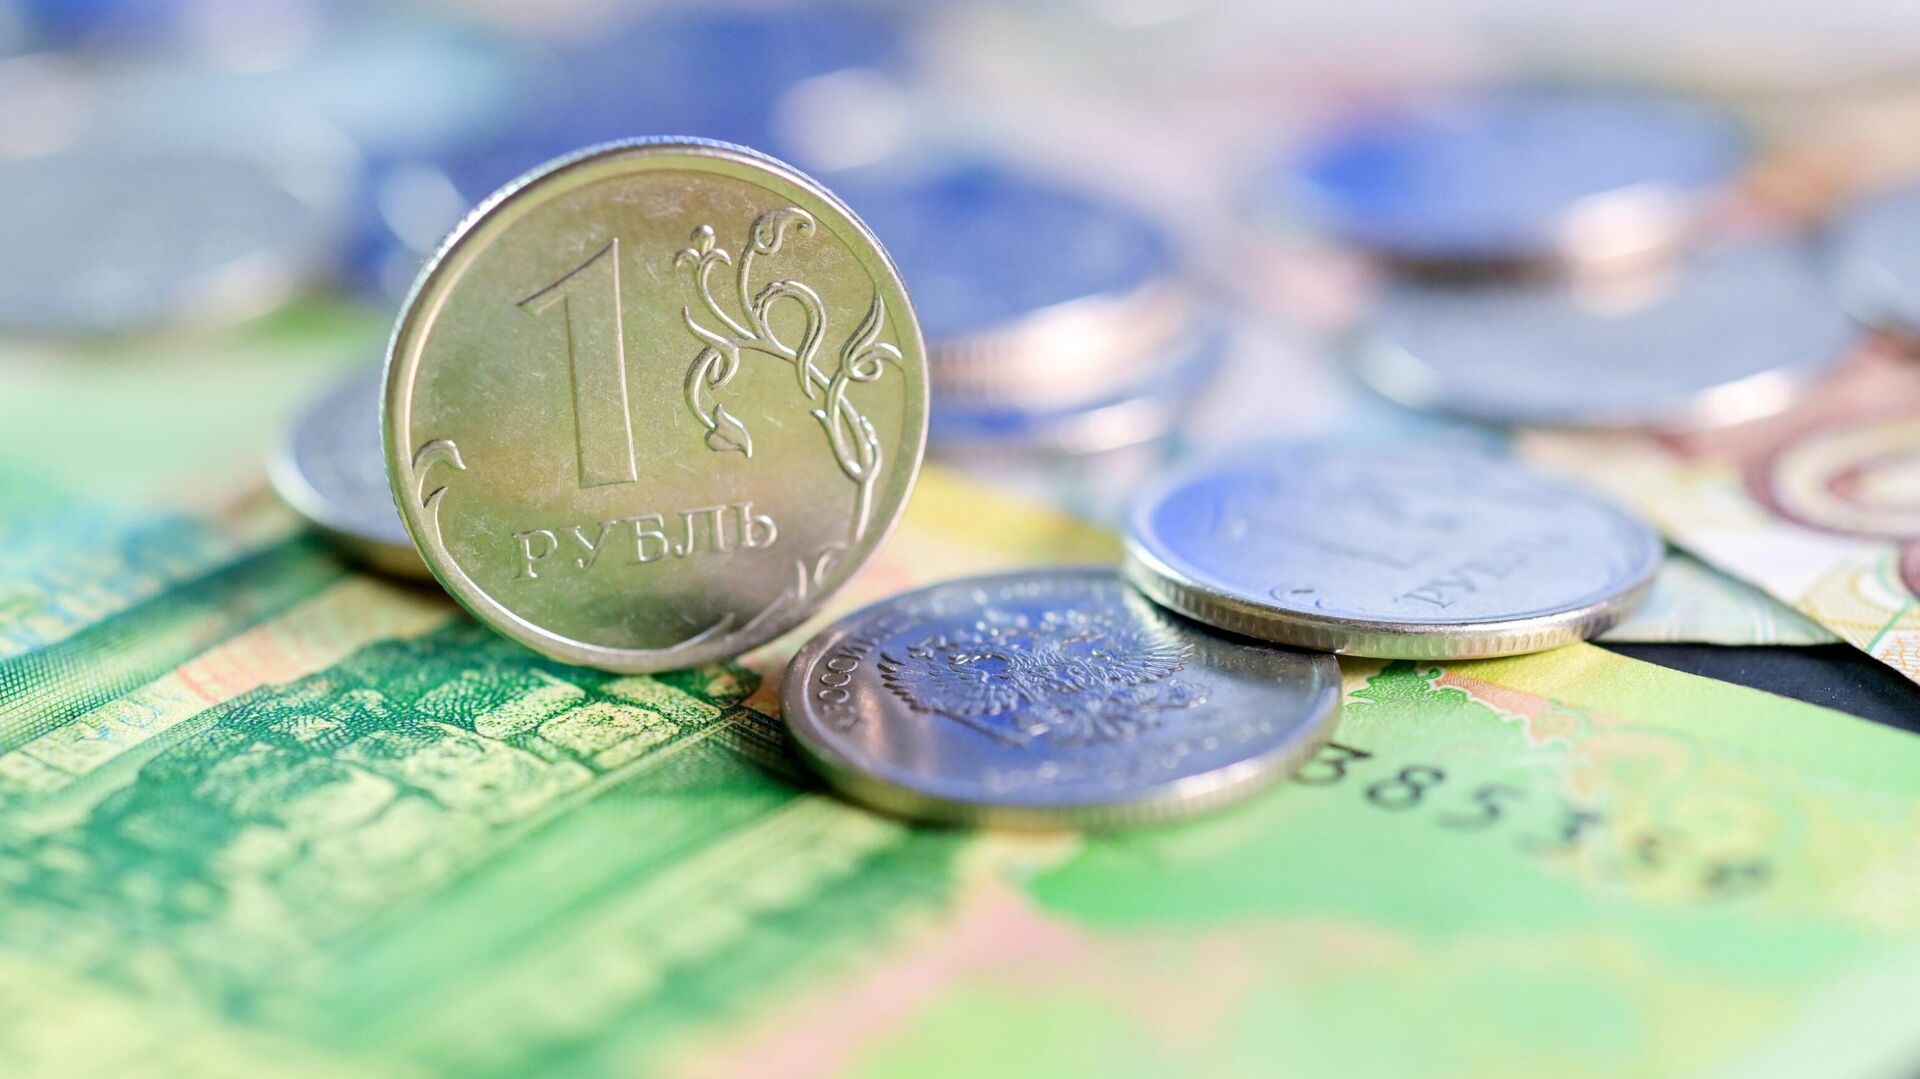 Экономист оценил перспективы рубля, доллара и евро этой зимой